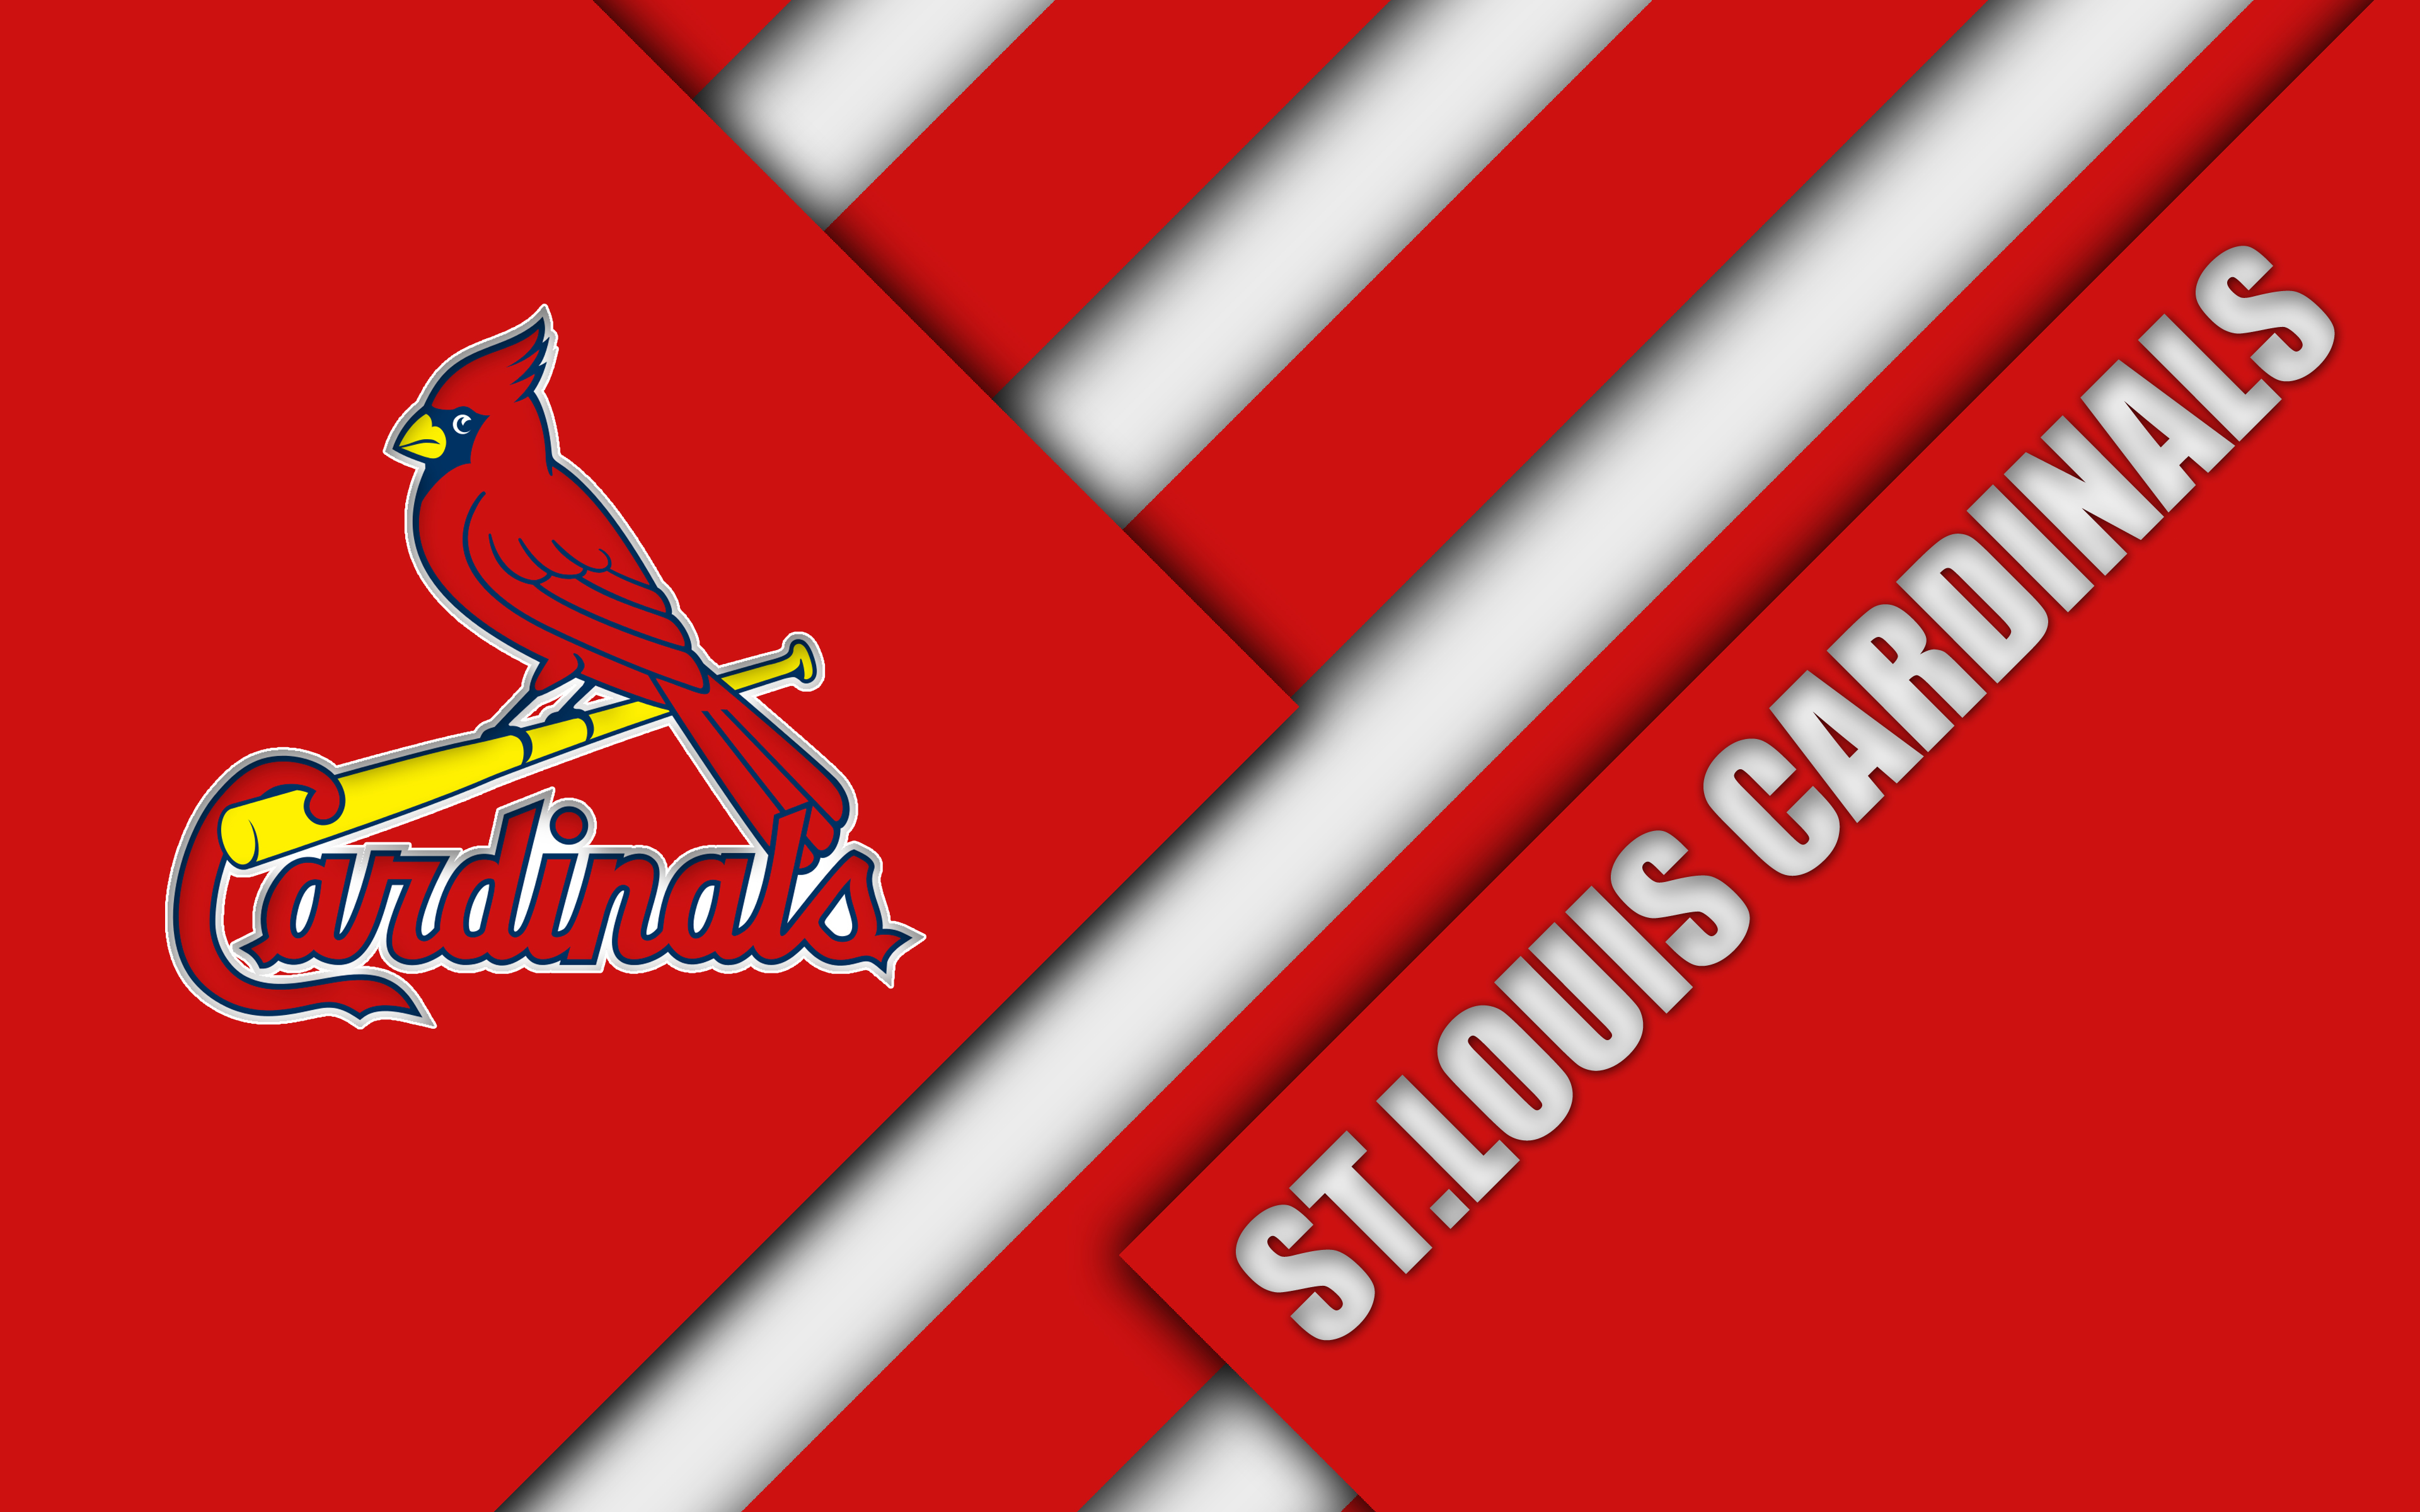 St. Louis Cardinals 4k Ultra HD